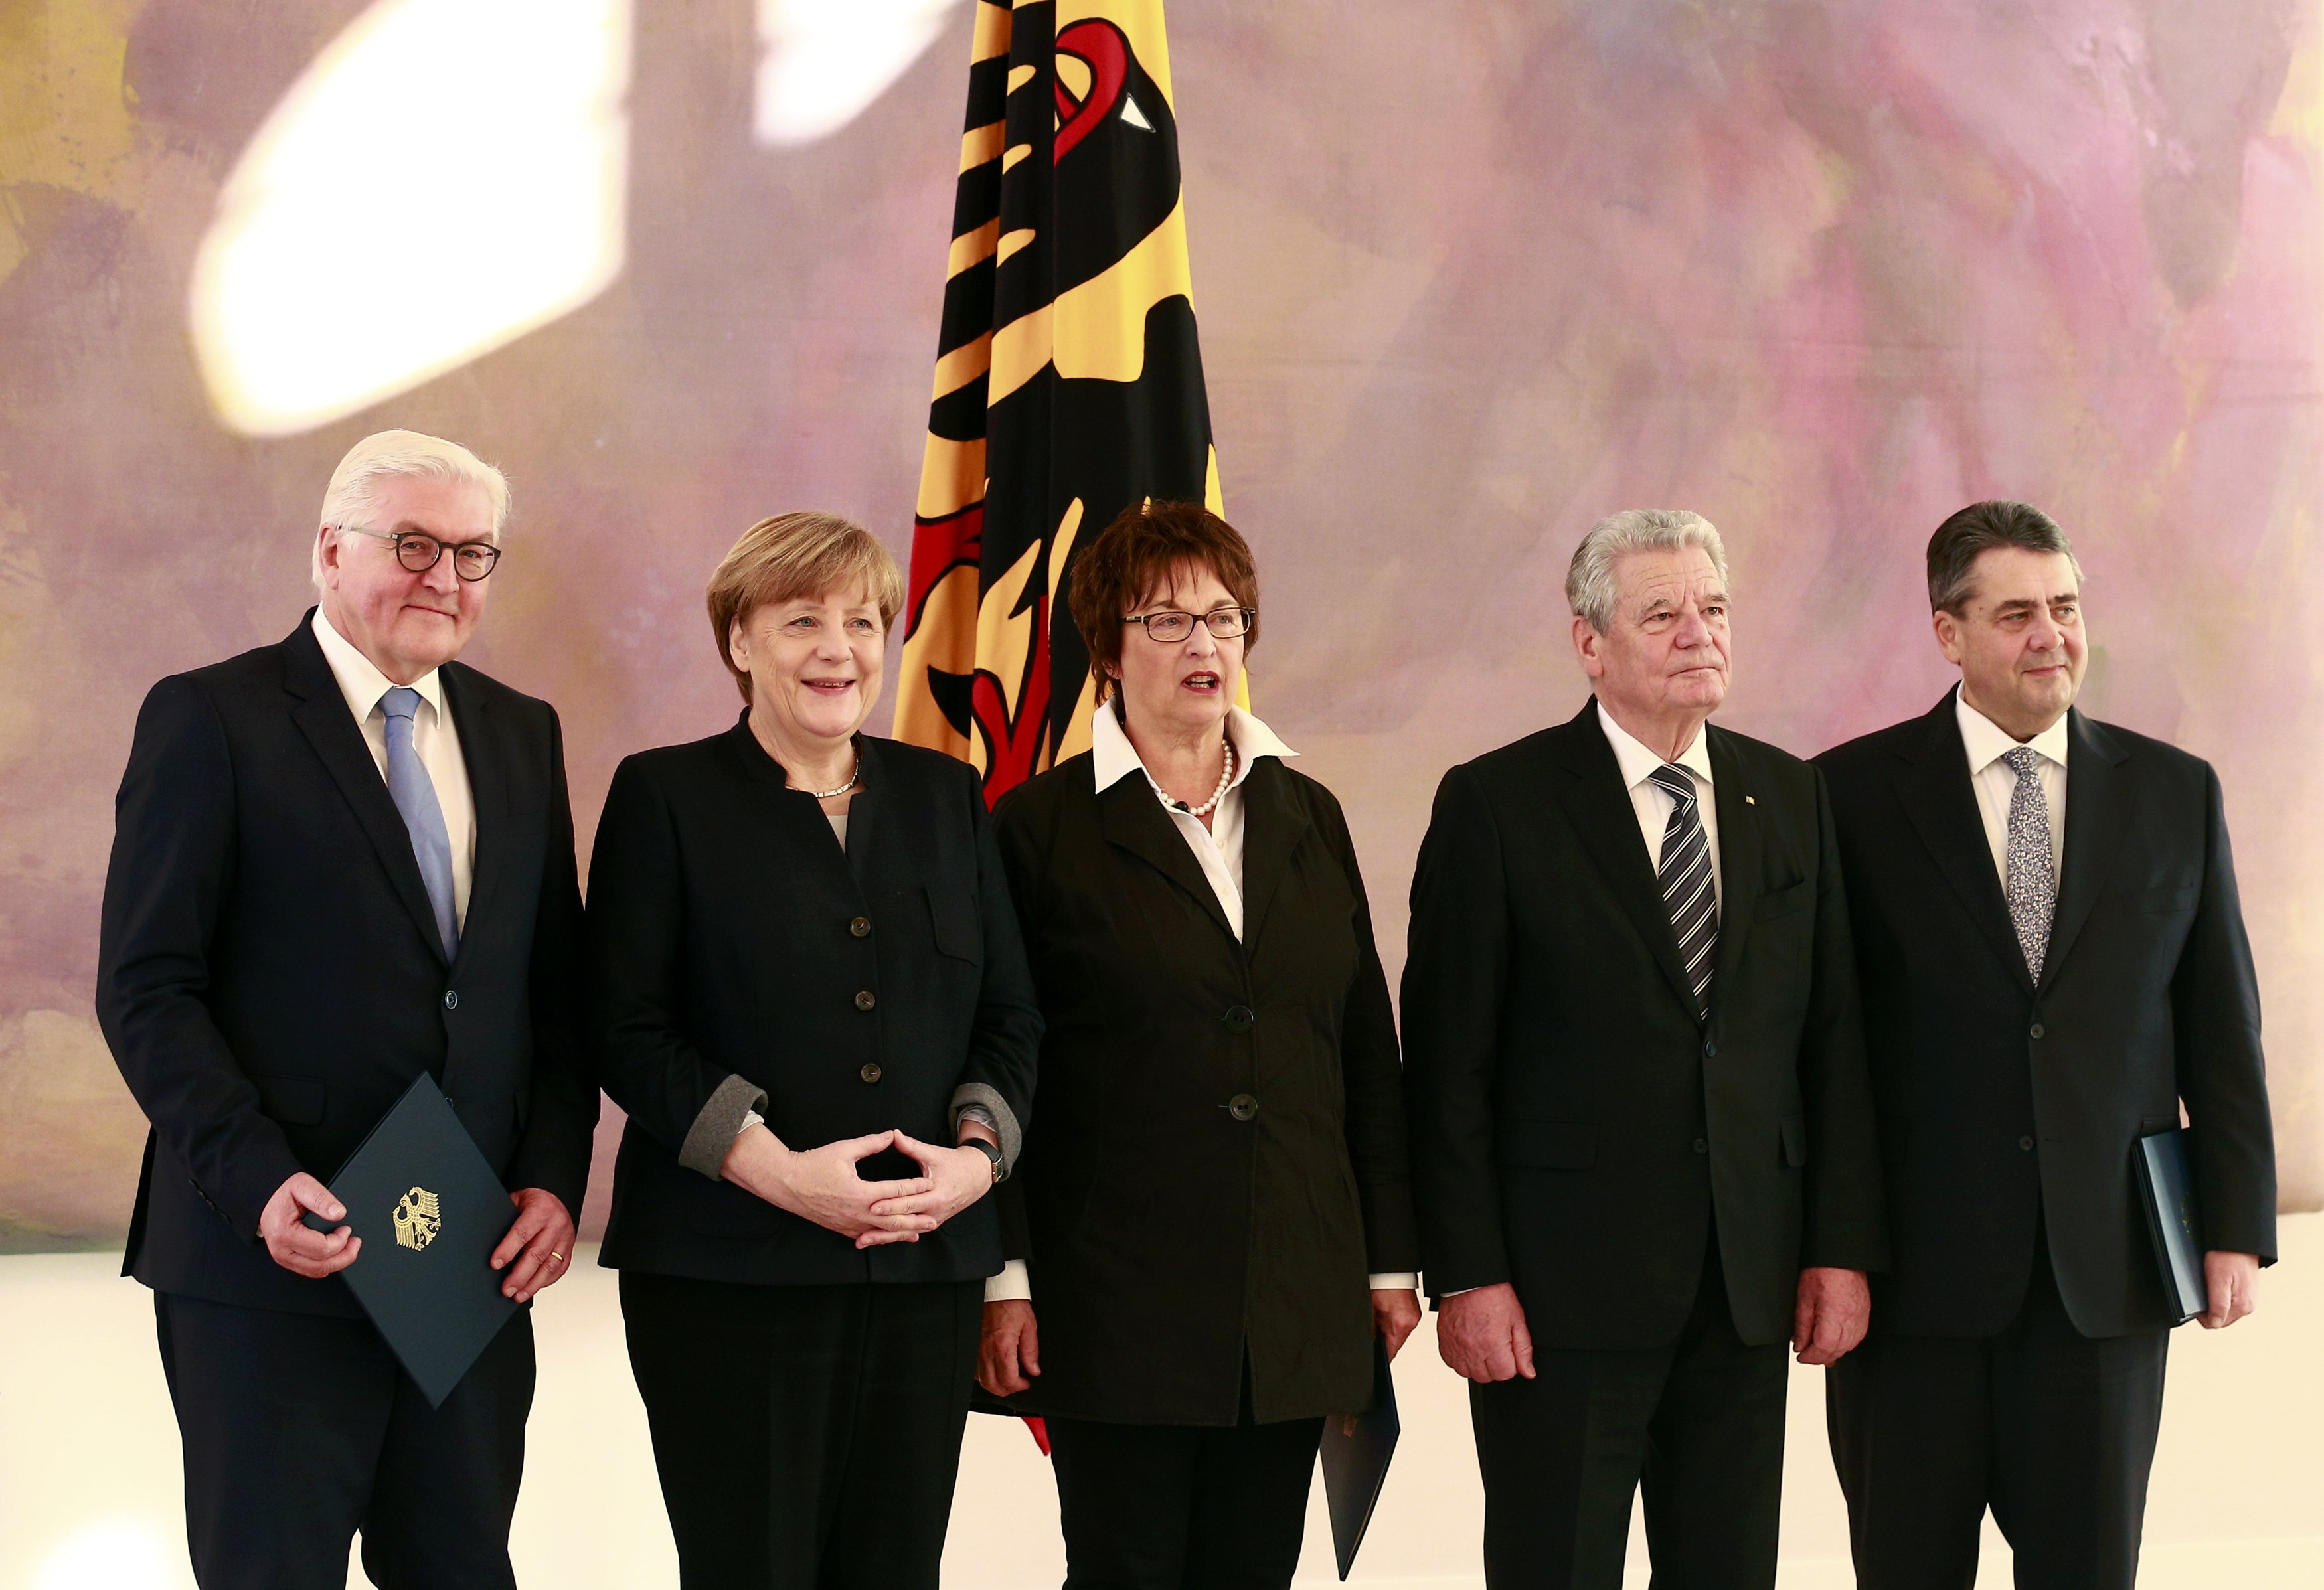 صورة تذكارية للرئيس الألمانى والمستشارة الألمانية مع الوزراء الجدد والسابقين فى الحكومة